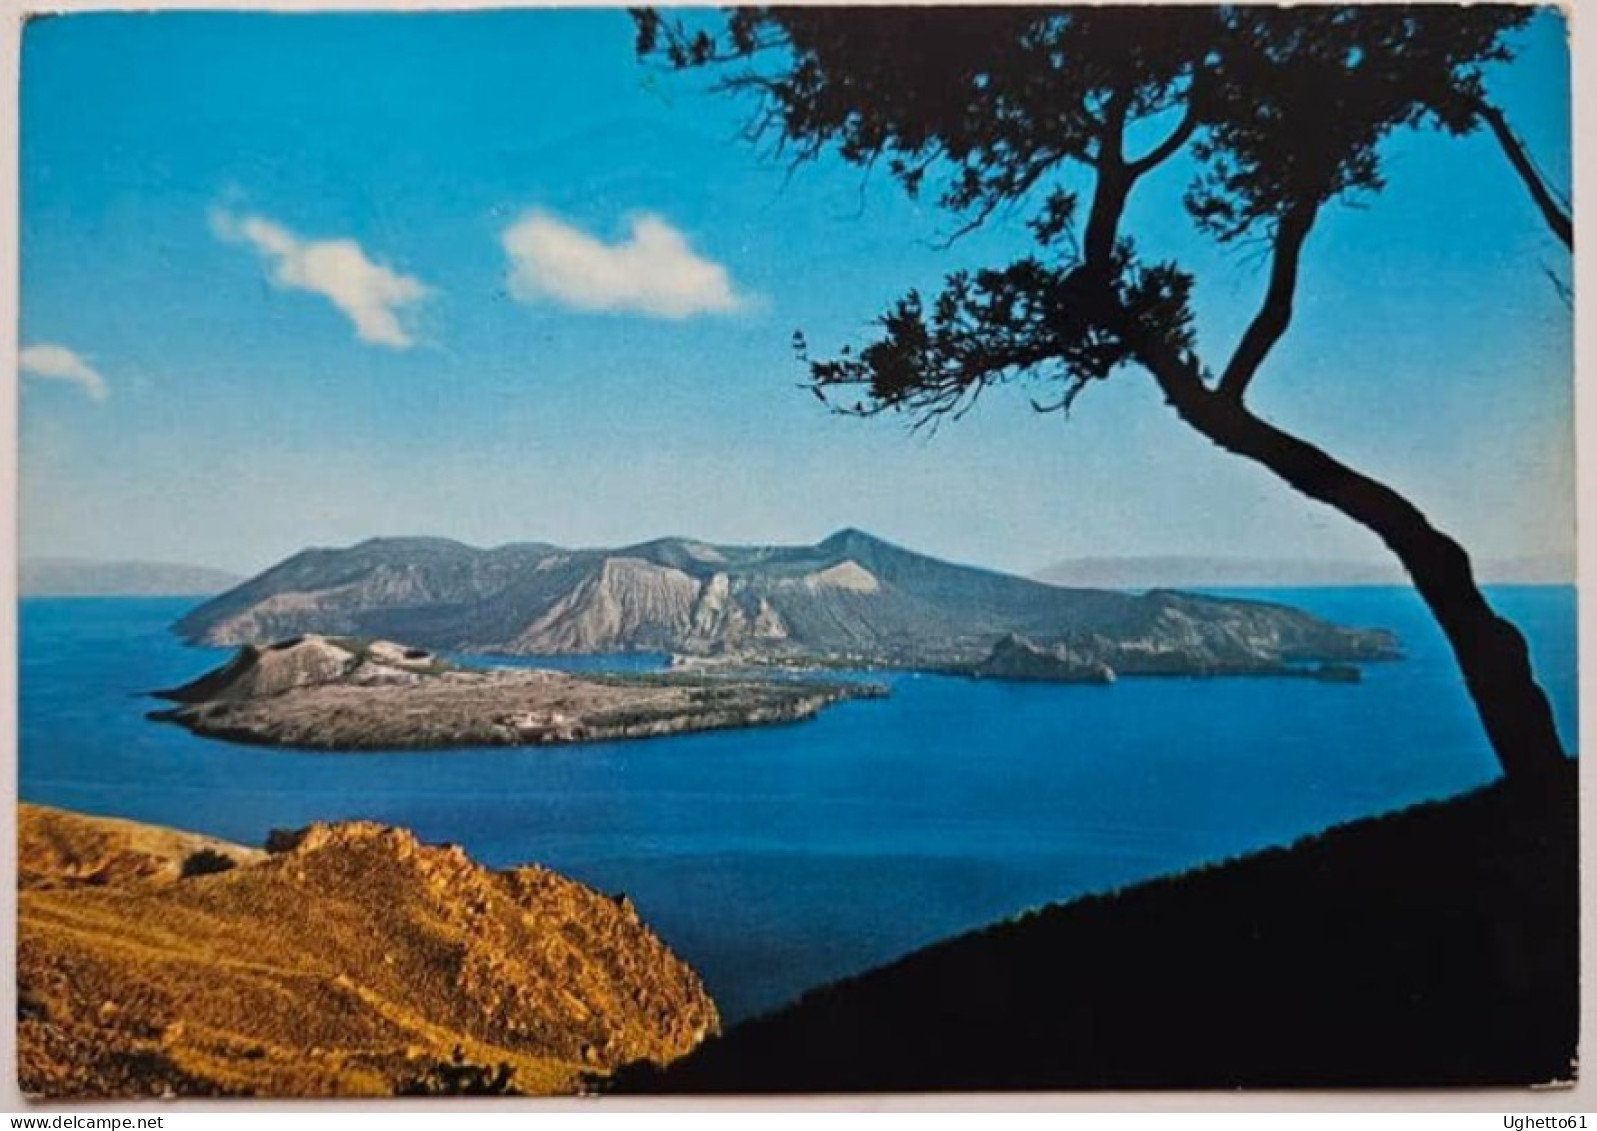 Cartolina Vulcano Con Annullo Speciale Prima Ascensione Della Canna Di Filicudi Isole Eolie 1972- Centenario Parete Est - Alpinismus, Bergsteigen